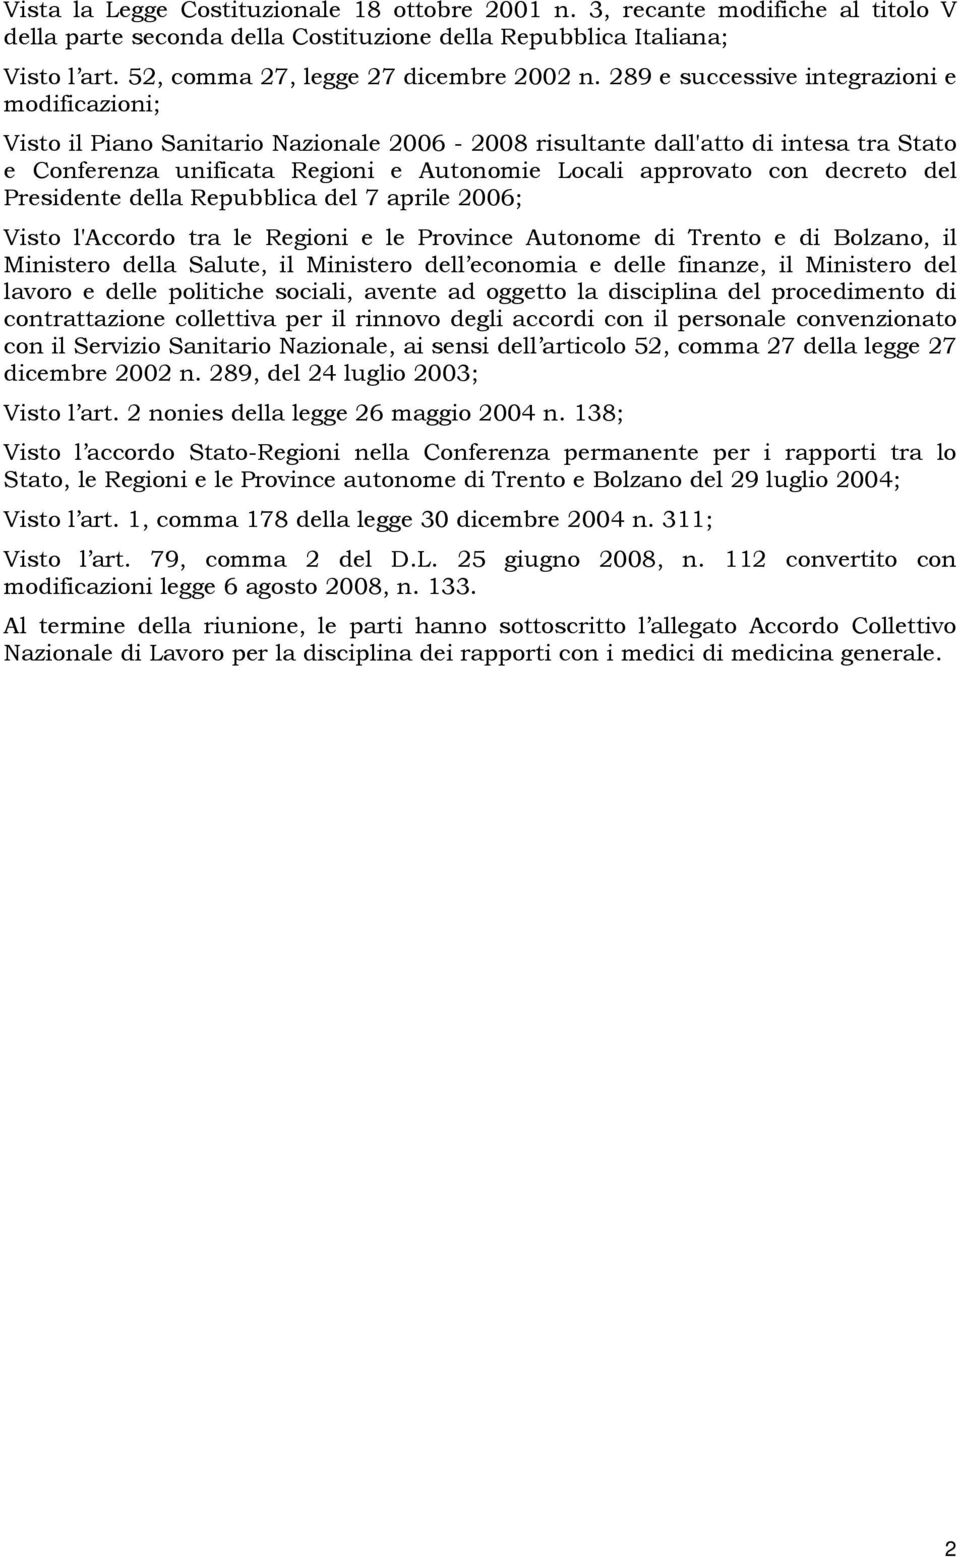 decreto del Presidente della Repubblica del 7 aprile 2006; Visto l'accordo tra le Regioni e le Province Autonome di Trento e di Bolzano, il Ministero della Salute, il Ministero dell economia e delle